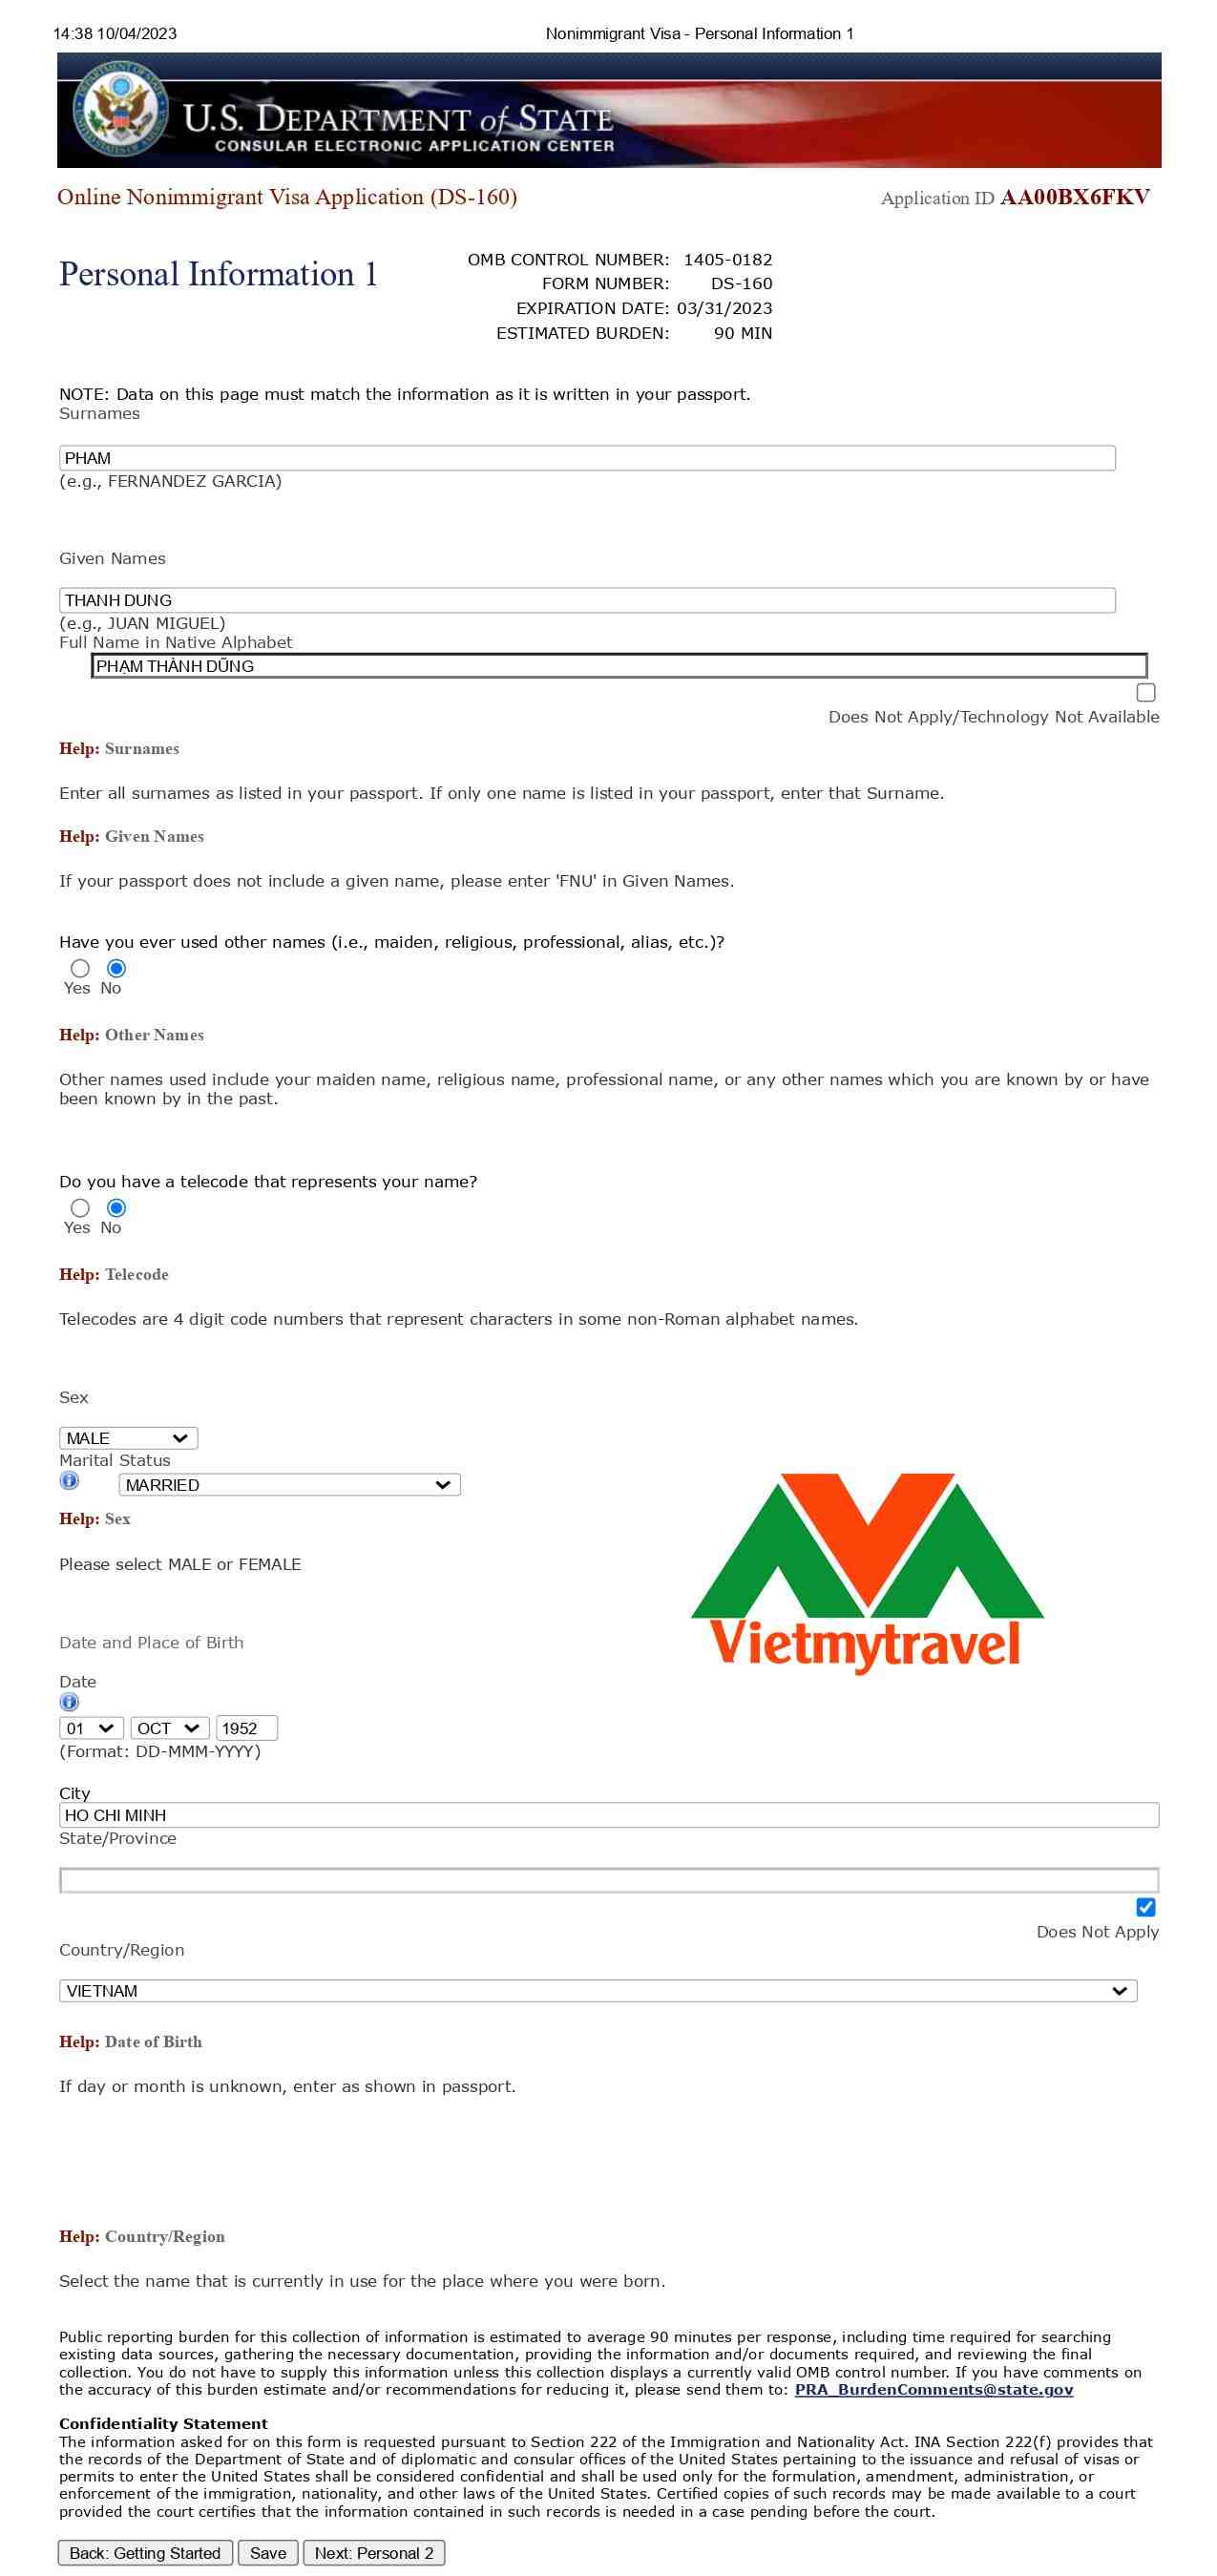 Hướng dẫn làm visa Mỹ chi tiết, mới nhất, đầy đủ nhất - Vietmytravel